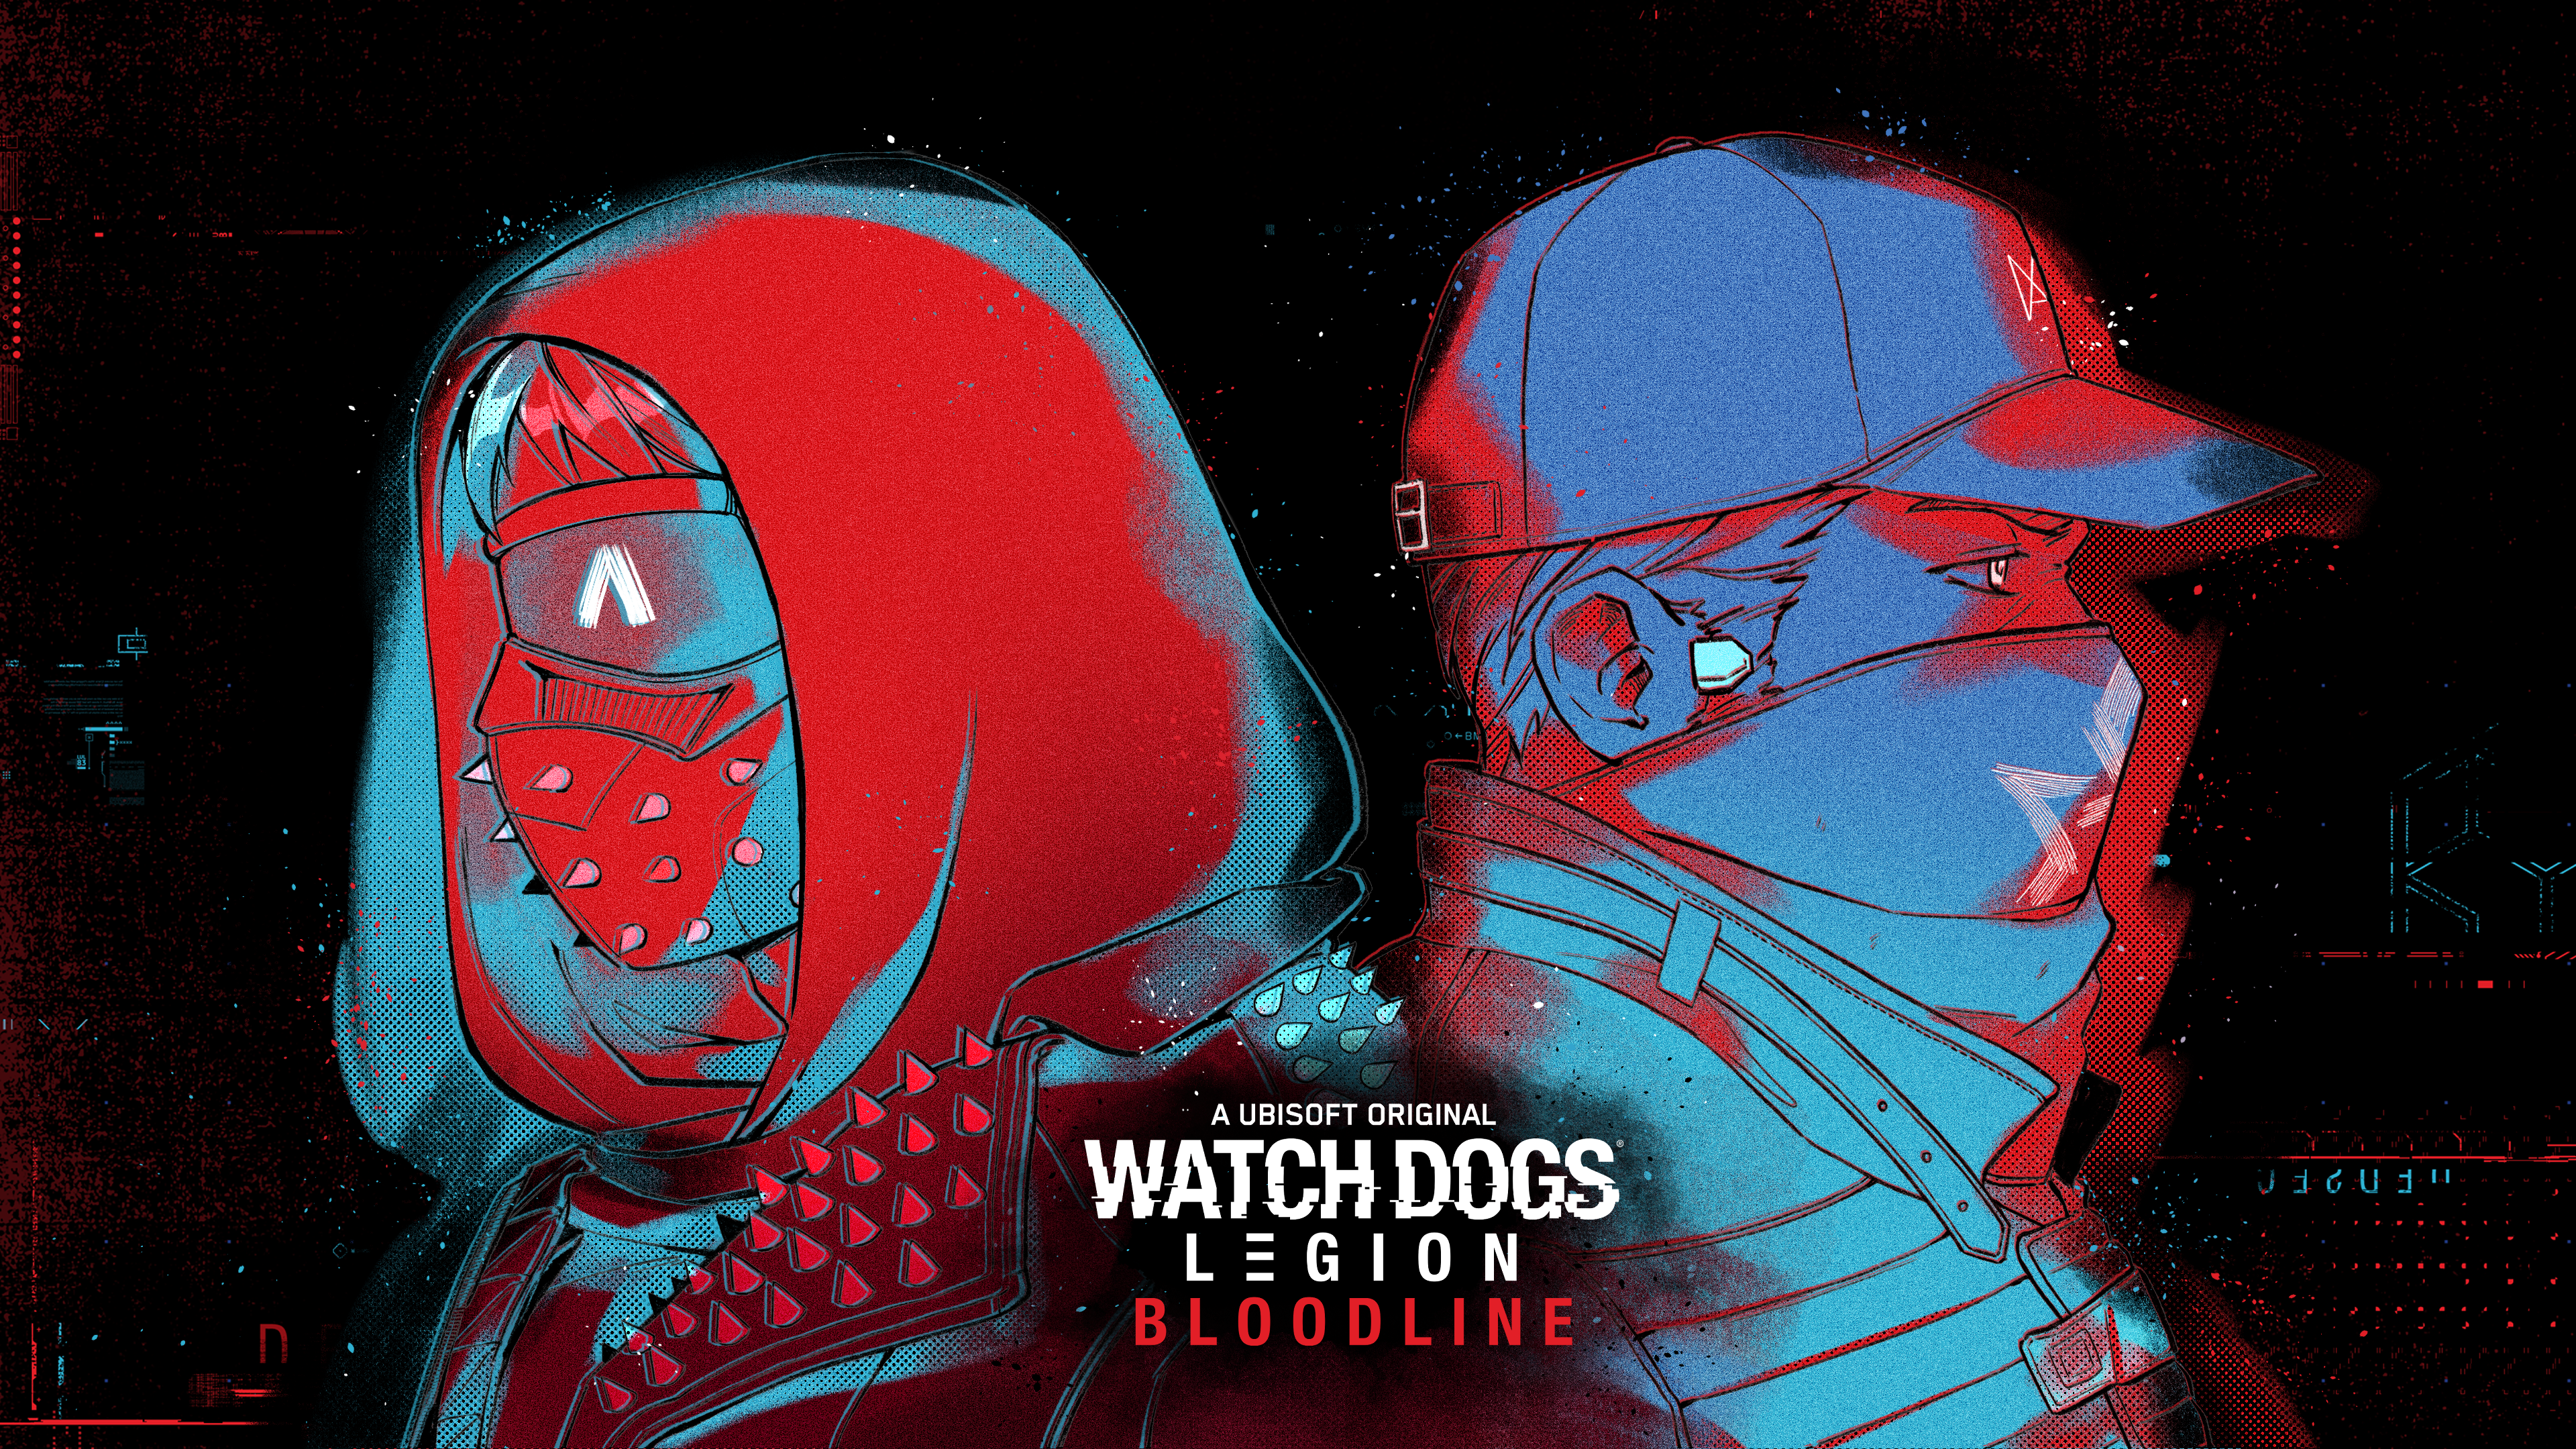 Watch Dogs: Legion – Bloodline wallpapers